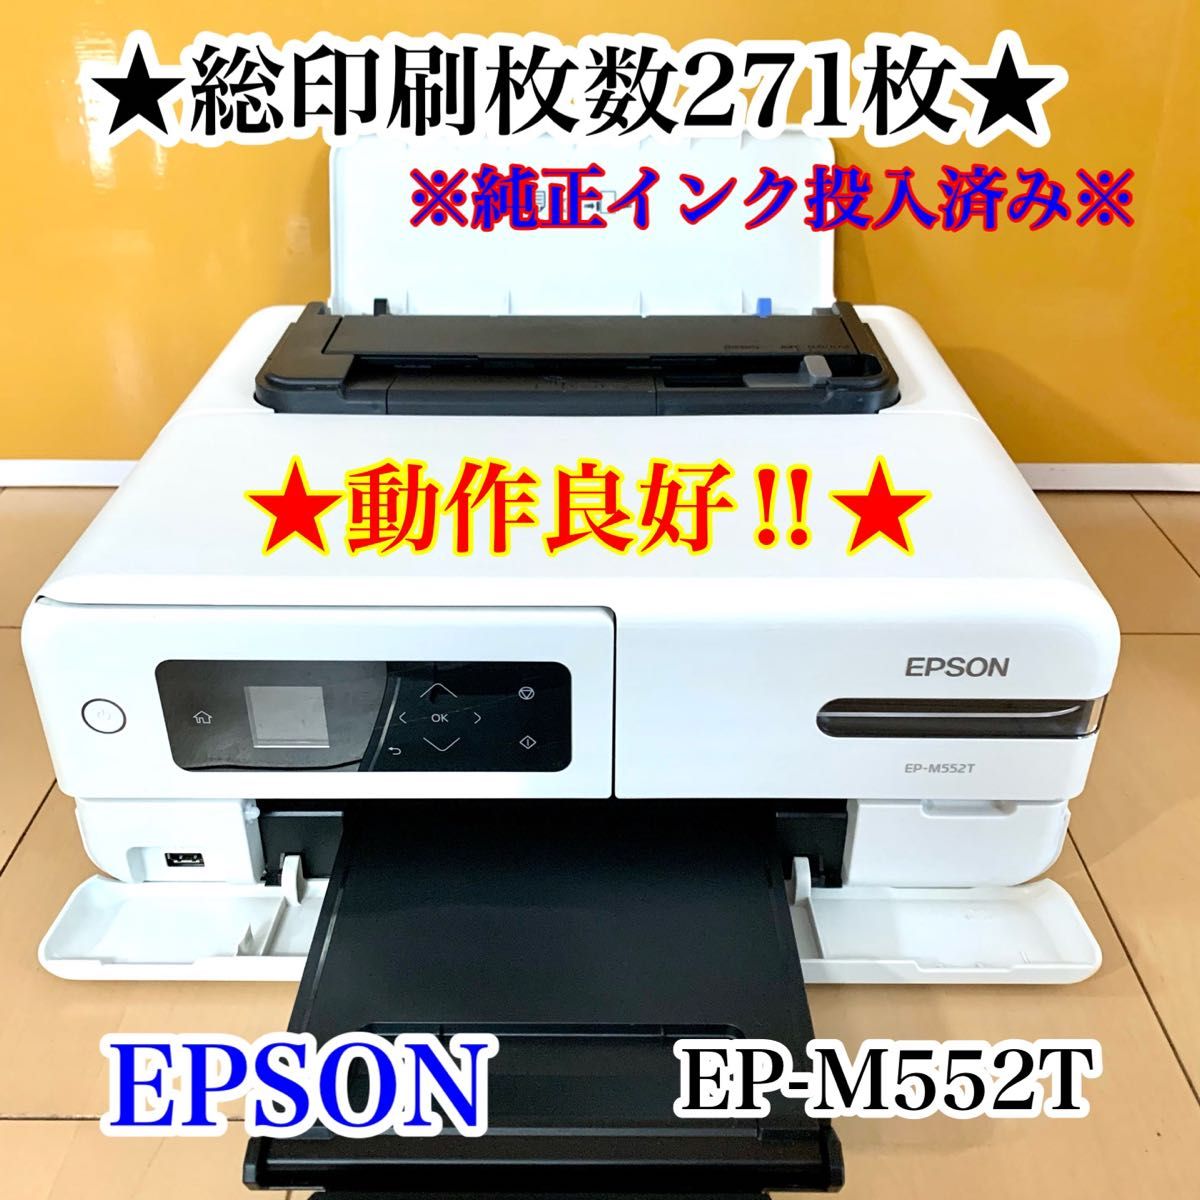 外装美品】EPSON エプソン プリンター EP-M552T 総印刷枚数271枚 動作 ...